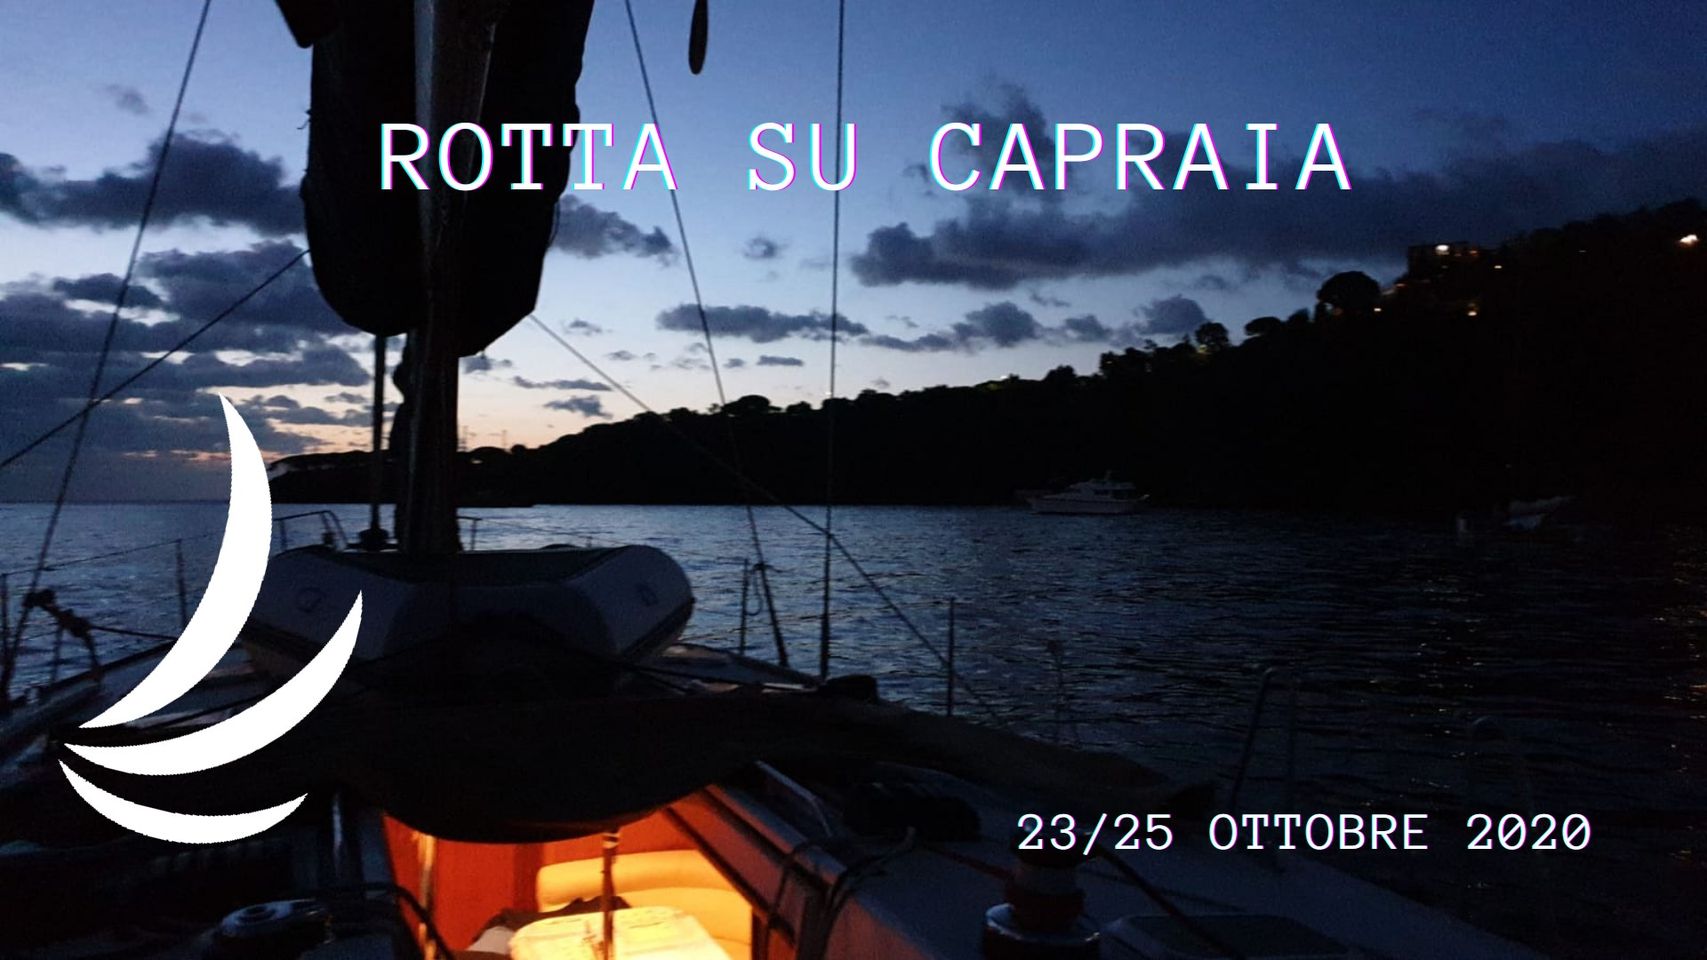 Ottobre 2020: Rotta su Capraia